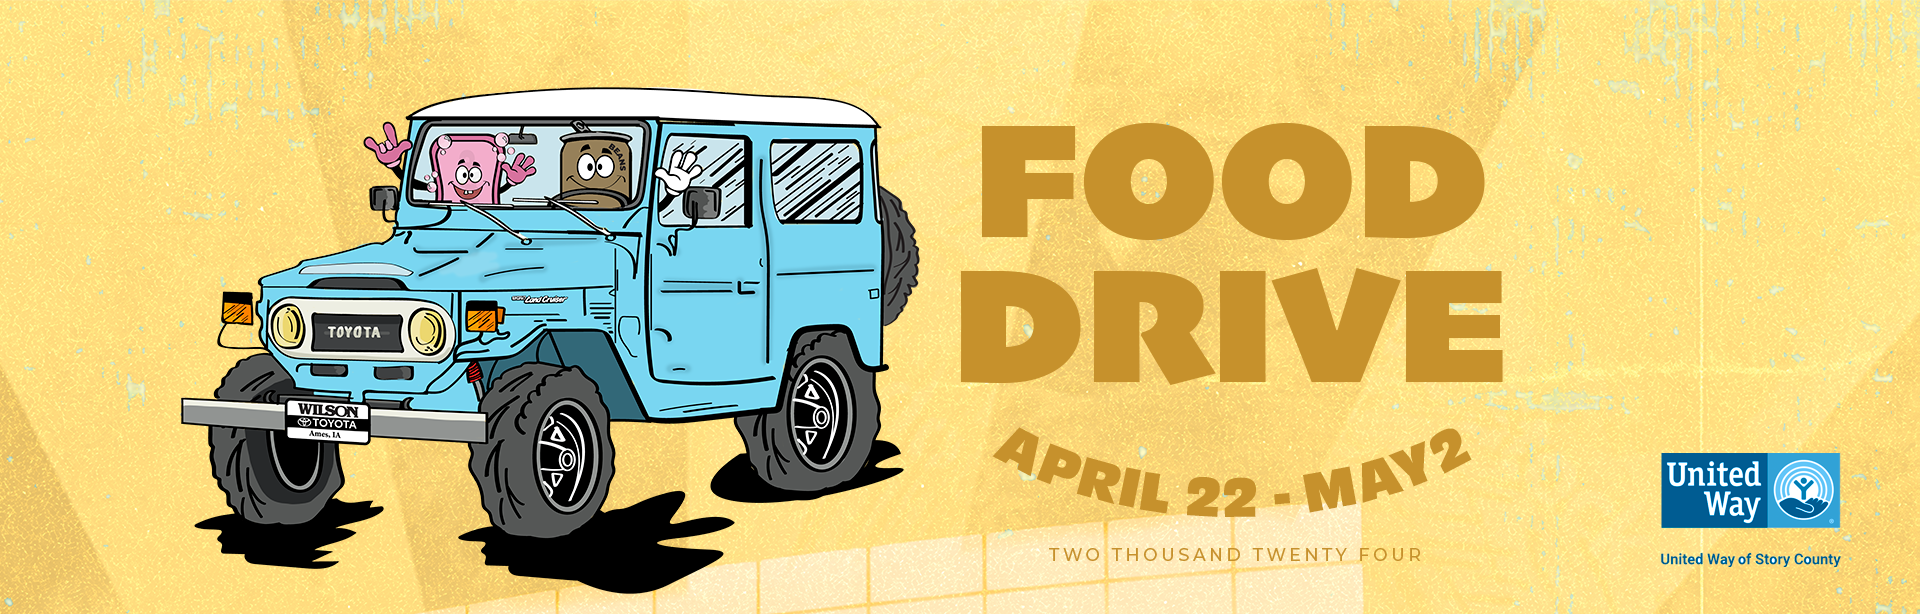 Food Drive April 22- May2